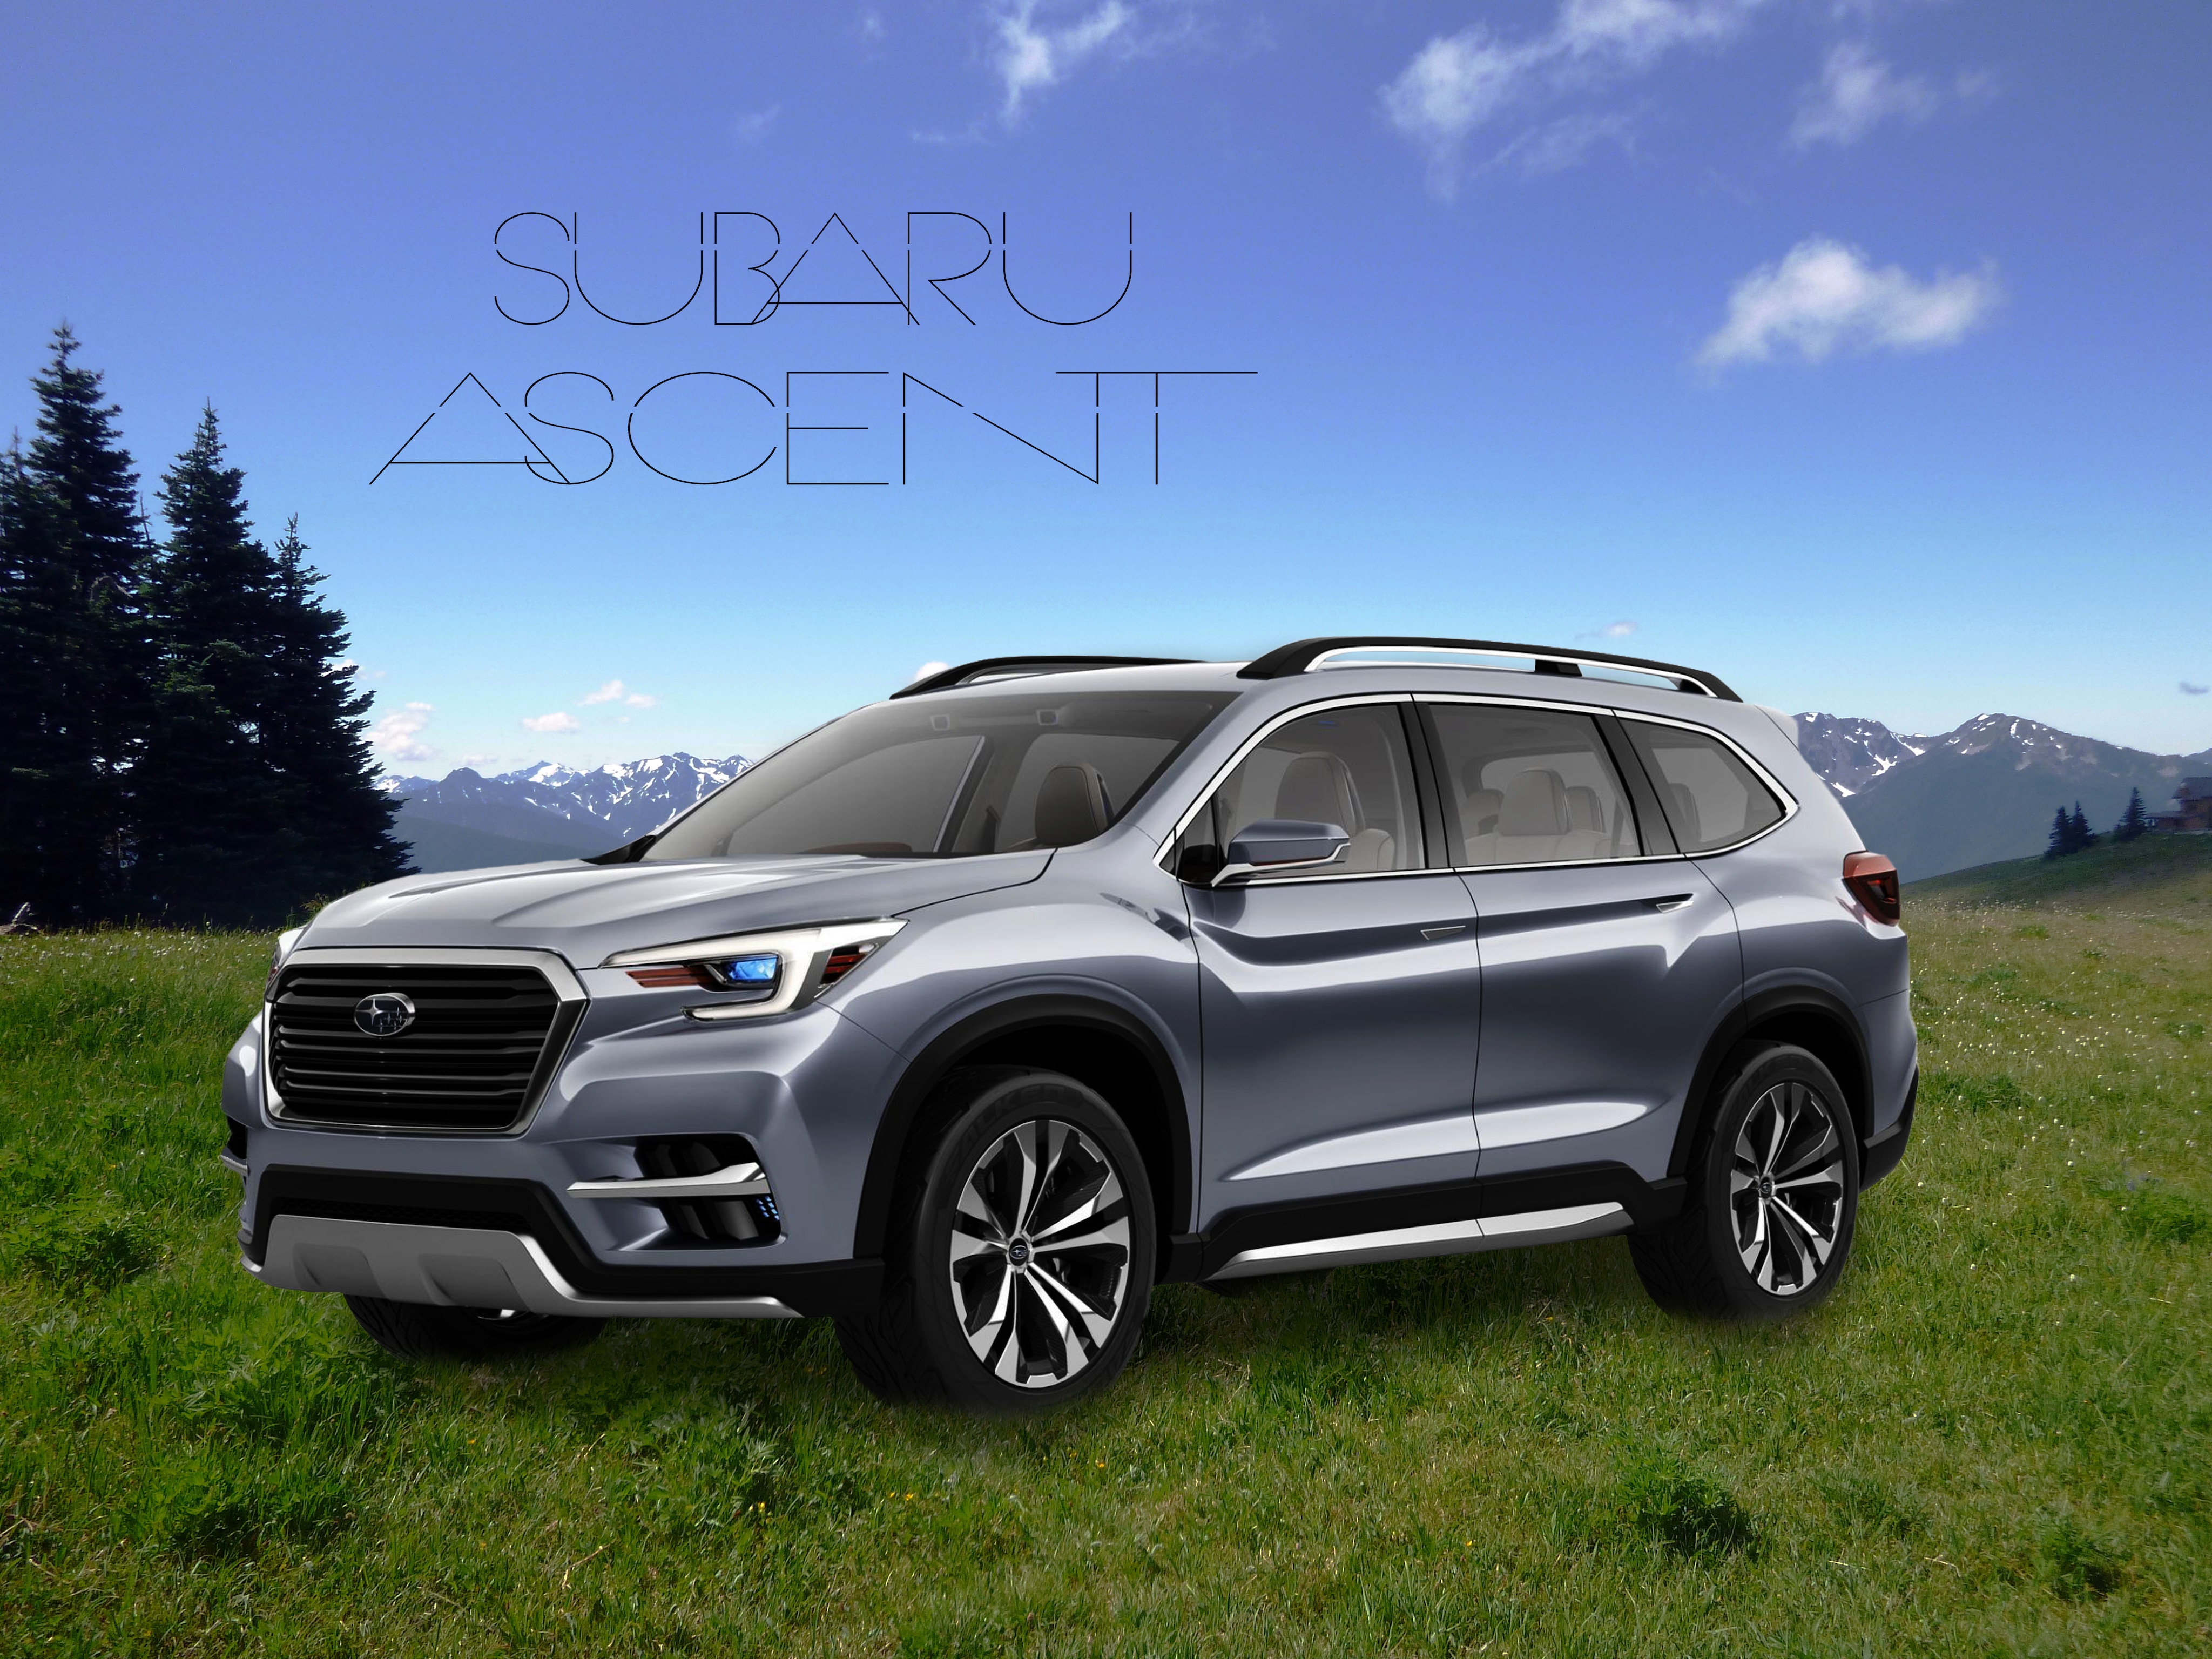 Subaru Ascent best model